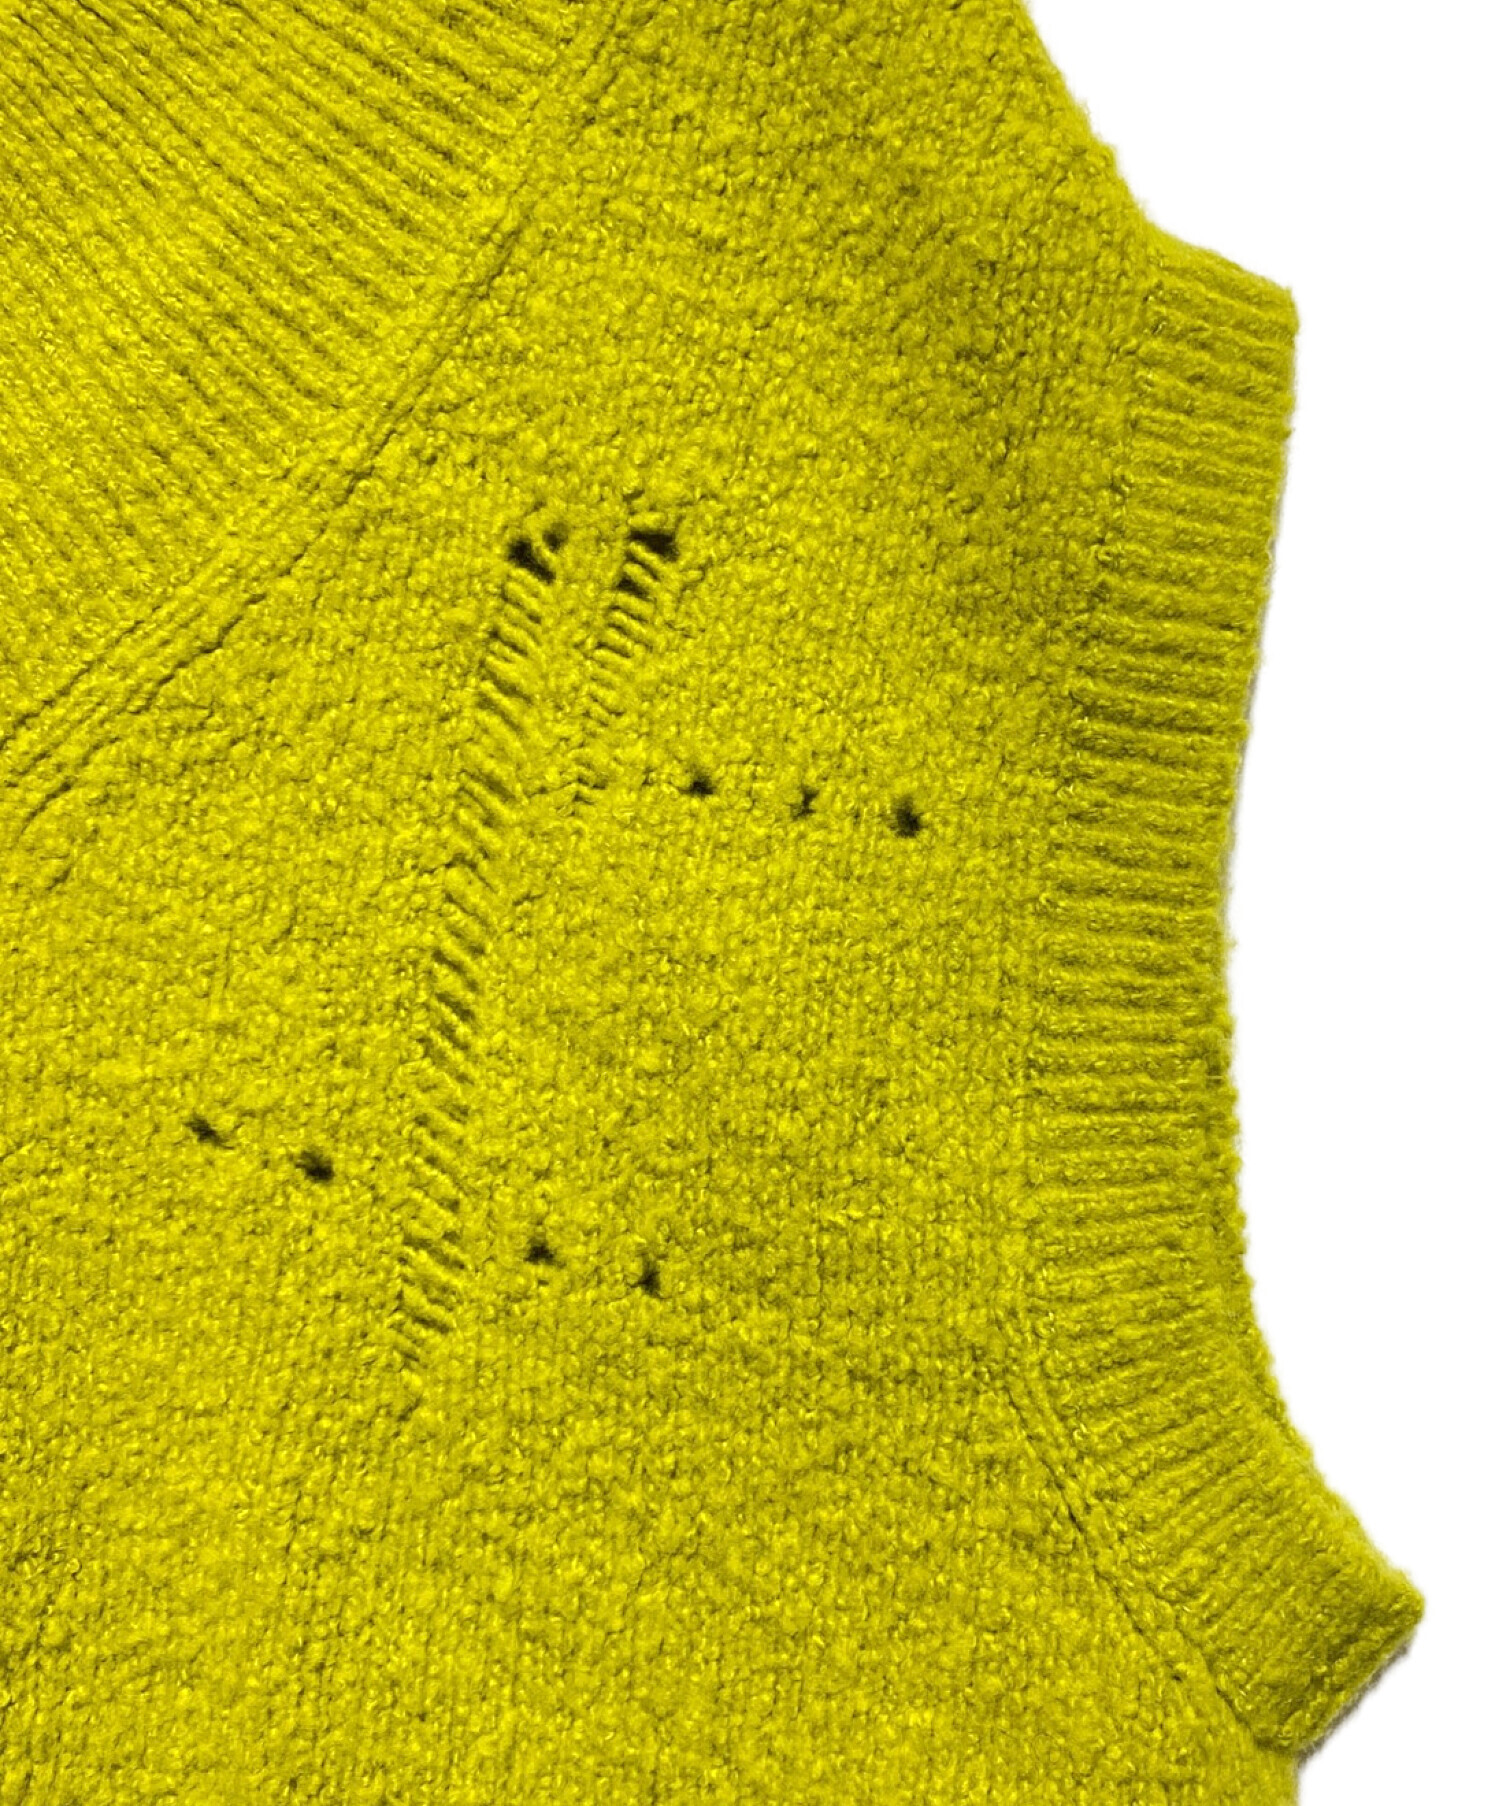 IRENE (アイレネ) whole garment knit vest イエロー サイズ:36 未使用品